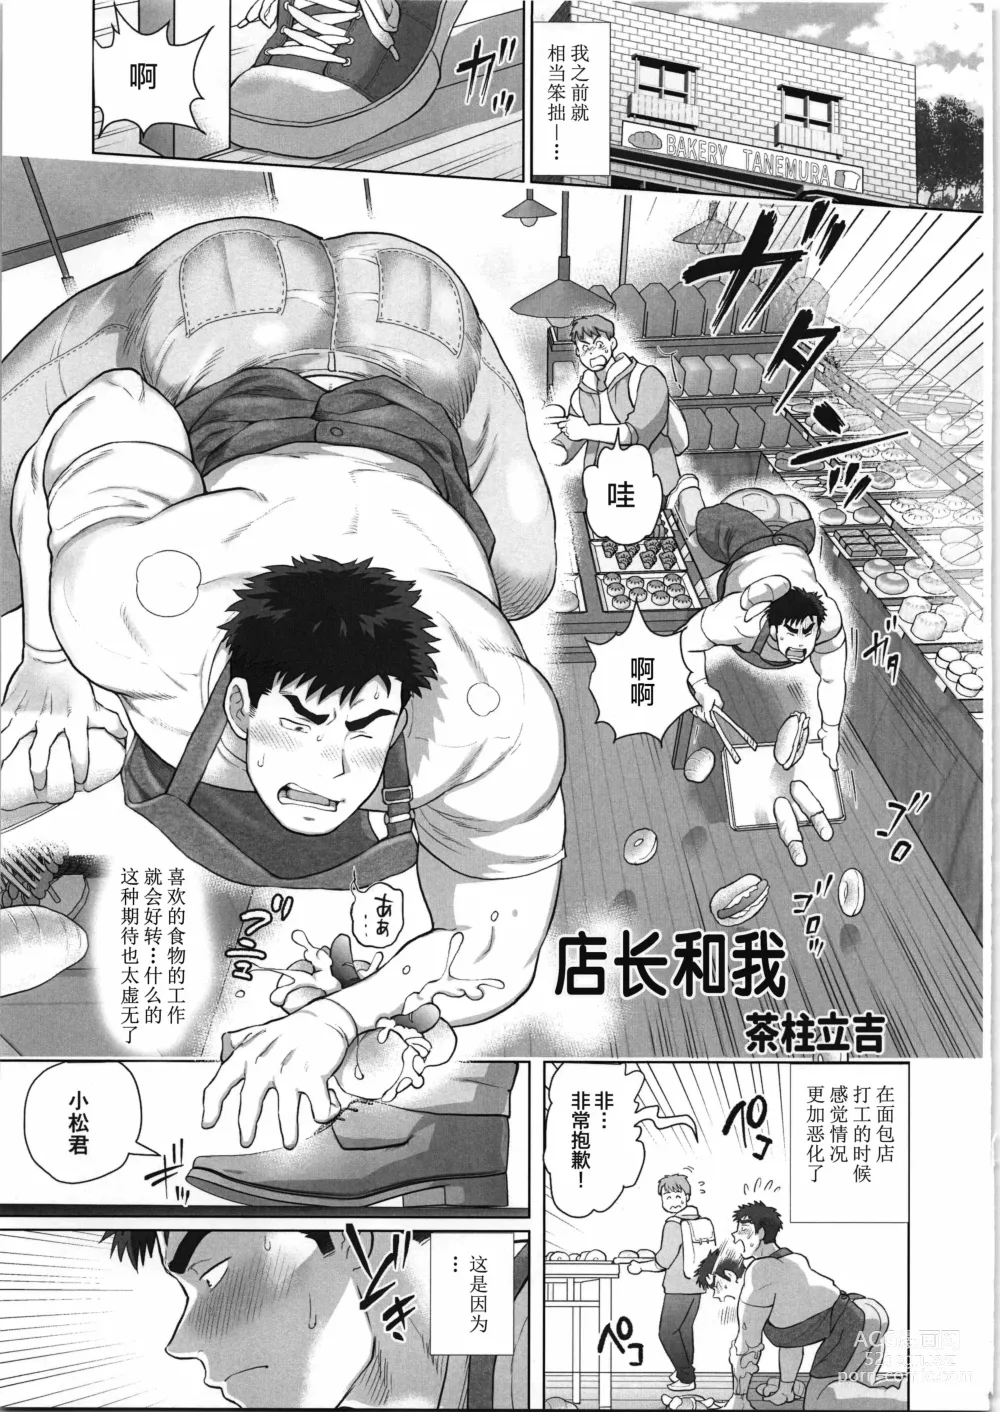 Page 24 of manga CHOGOKIN-004